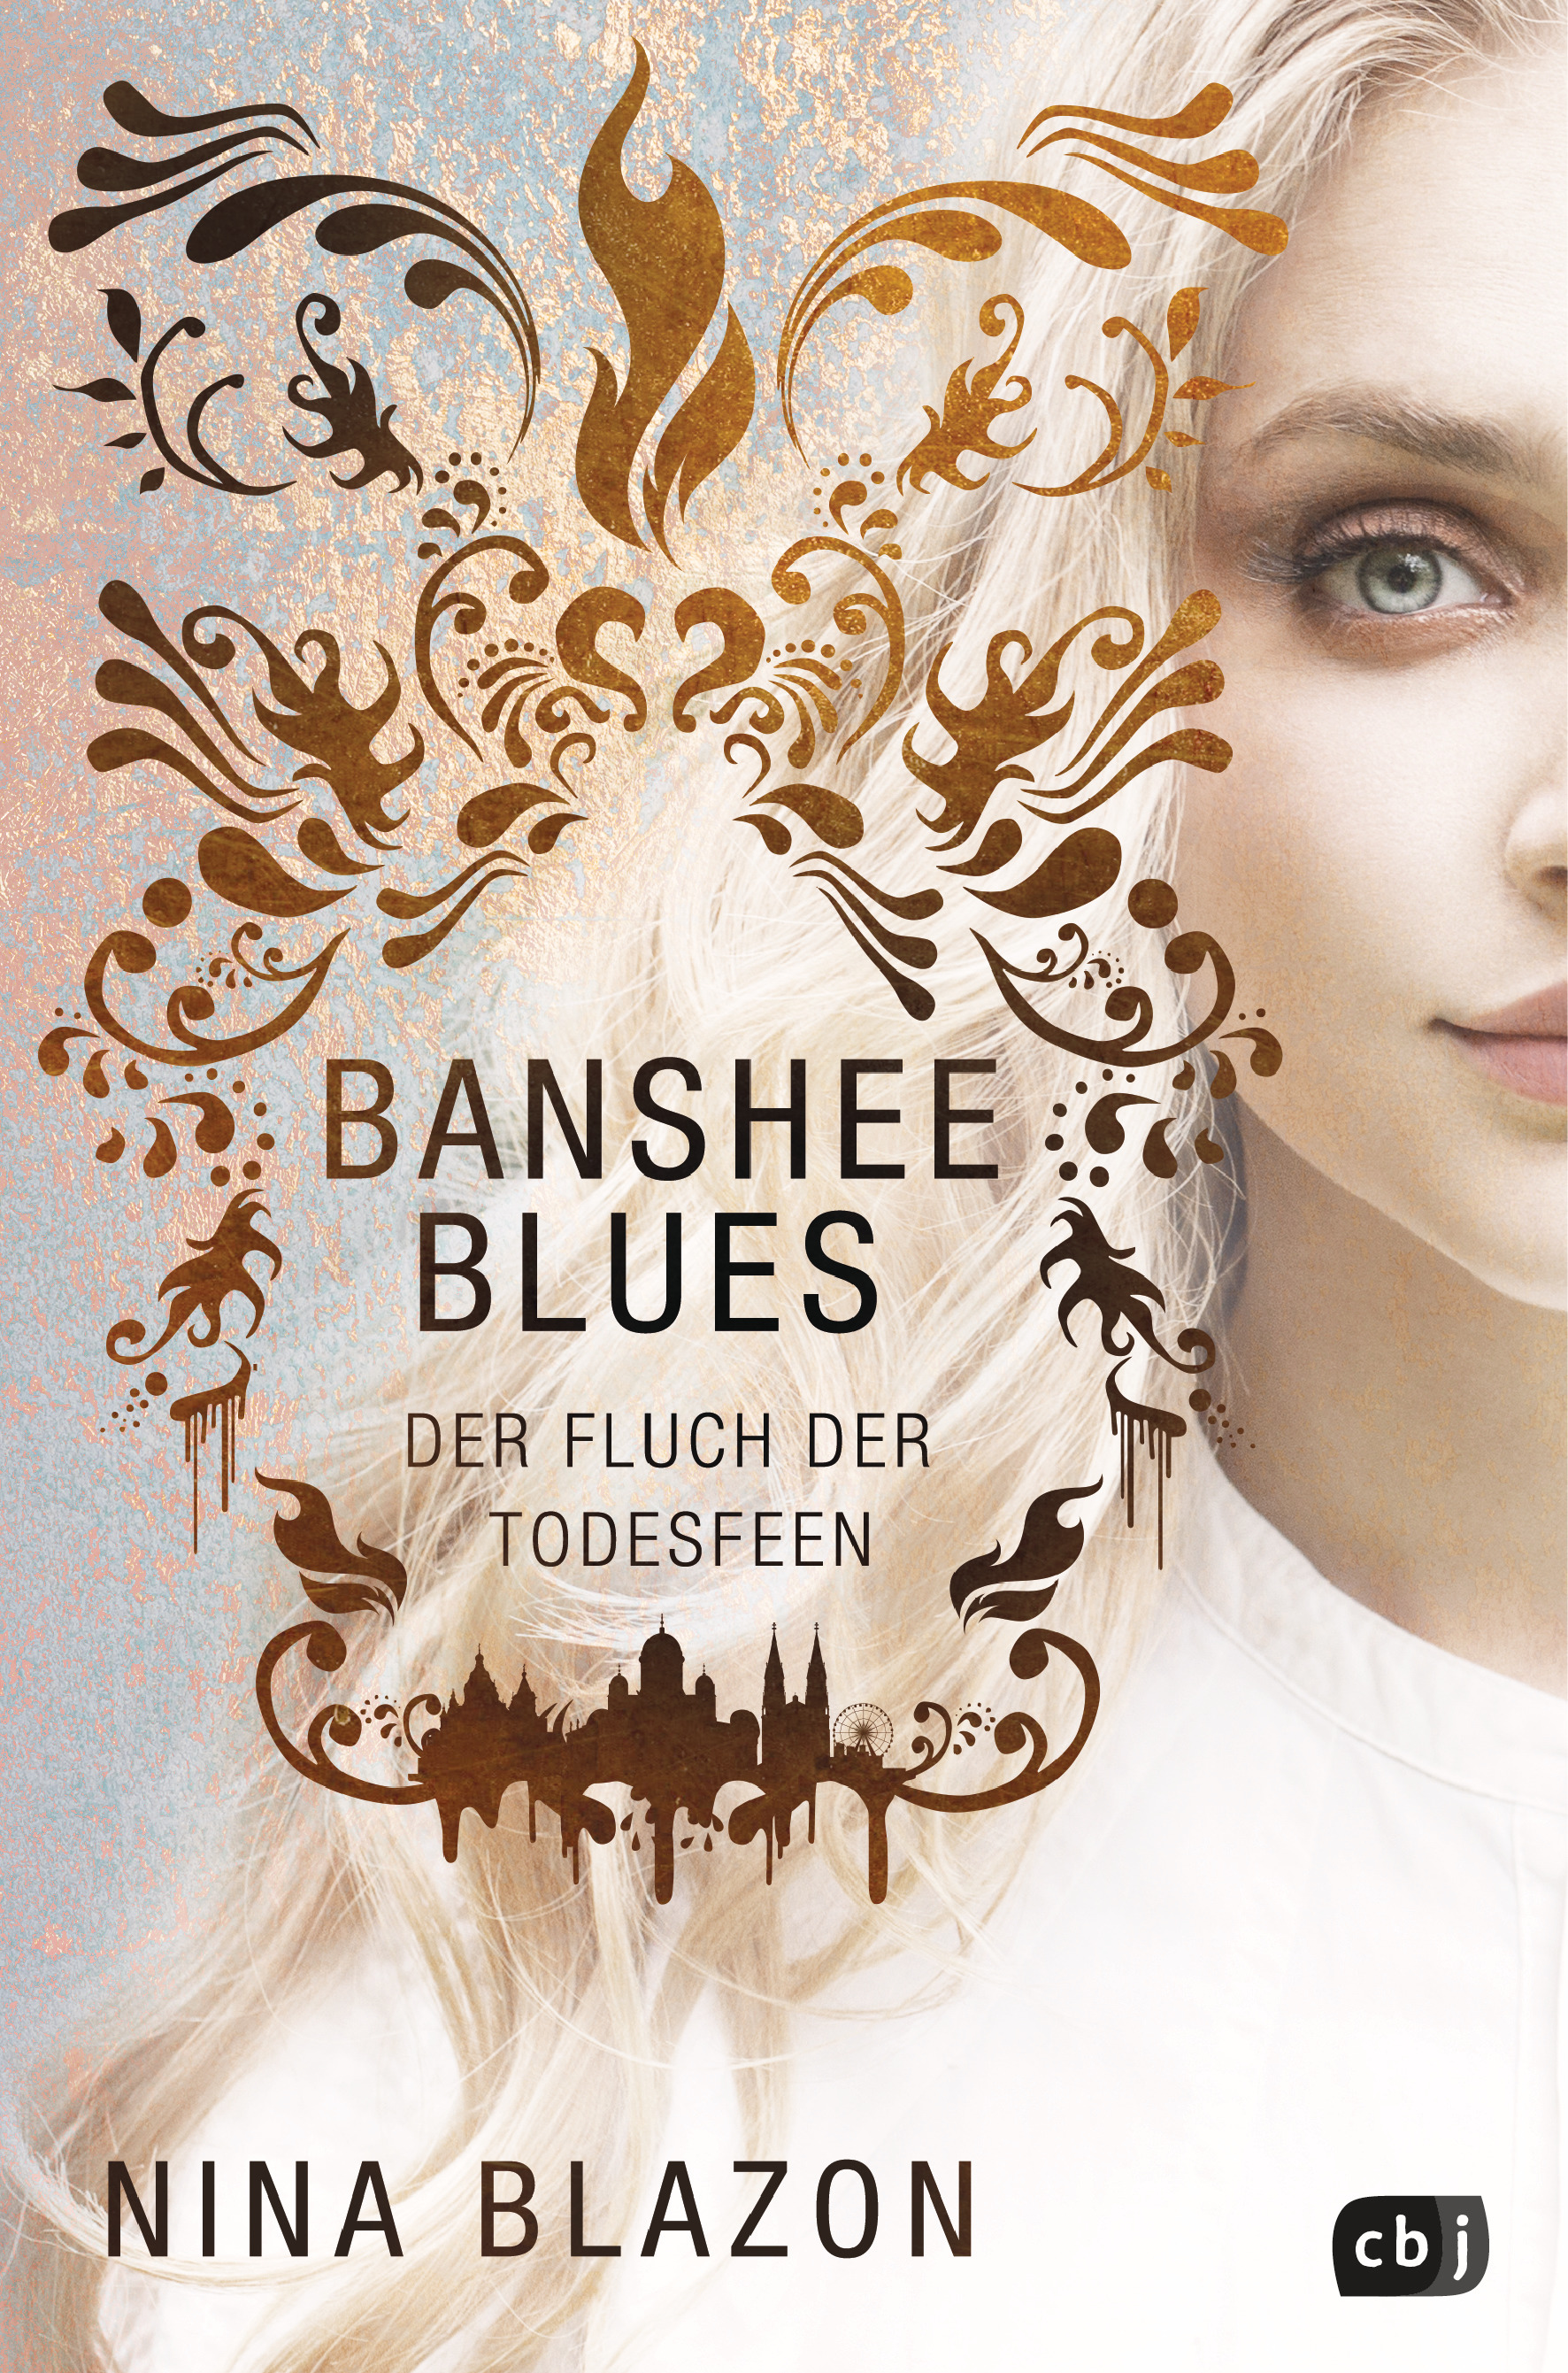 Bücherblog. Neuerscheinungen. Buchcover. Banshee Blues - Der Fluch der Todesfeen von Nina Blazon. Fantasy. Urban Fantasy. Jugendbuch. cbj.